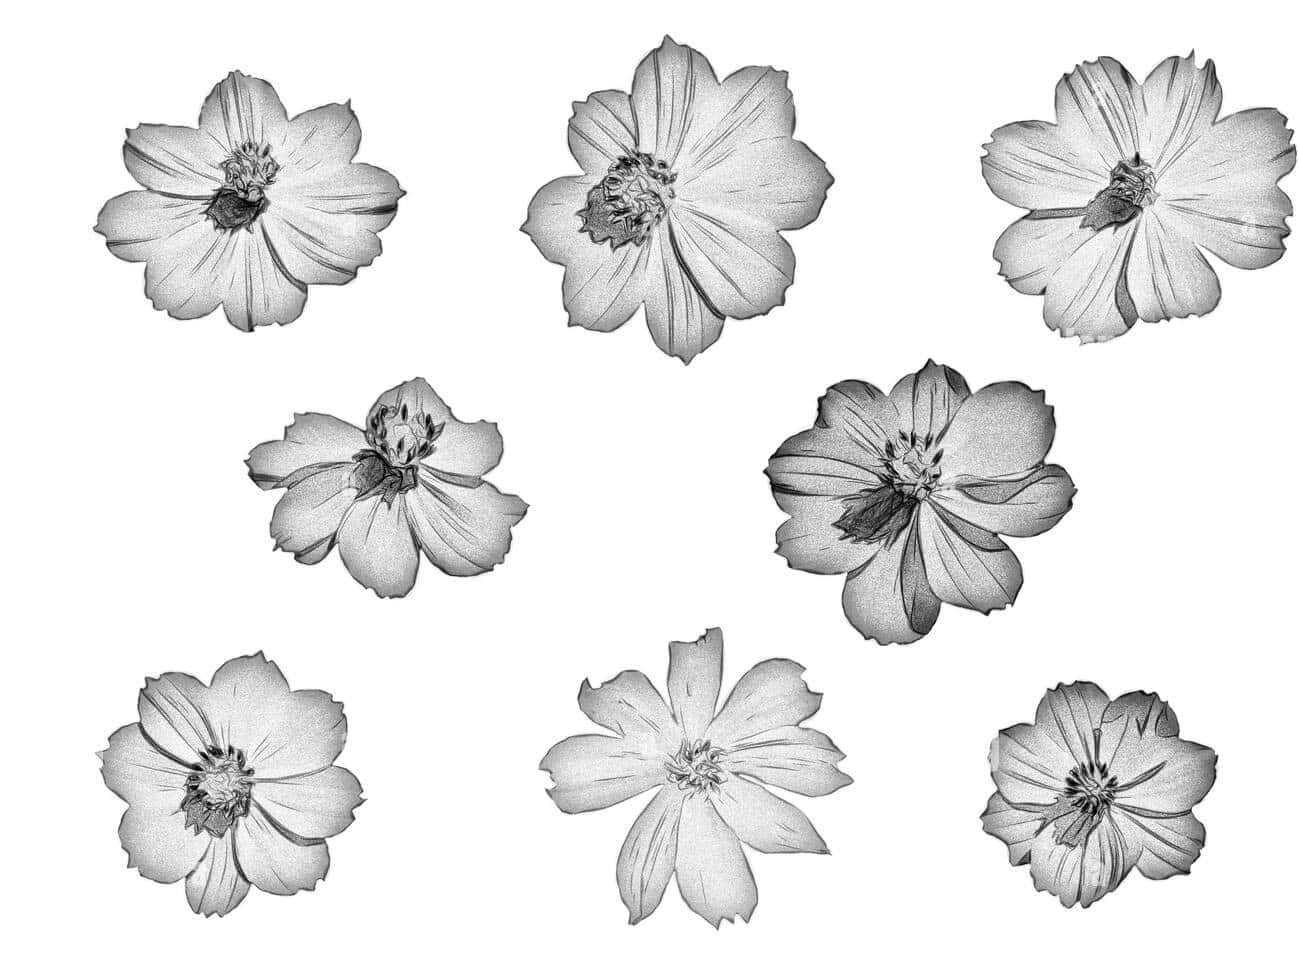 Ensort-hvid Tegning Af Blomster.